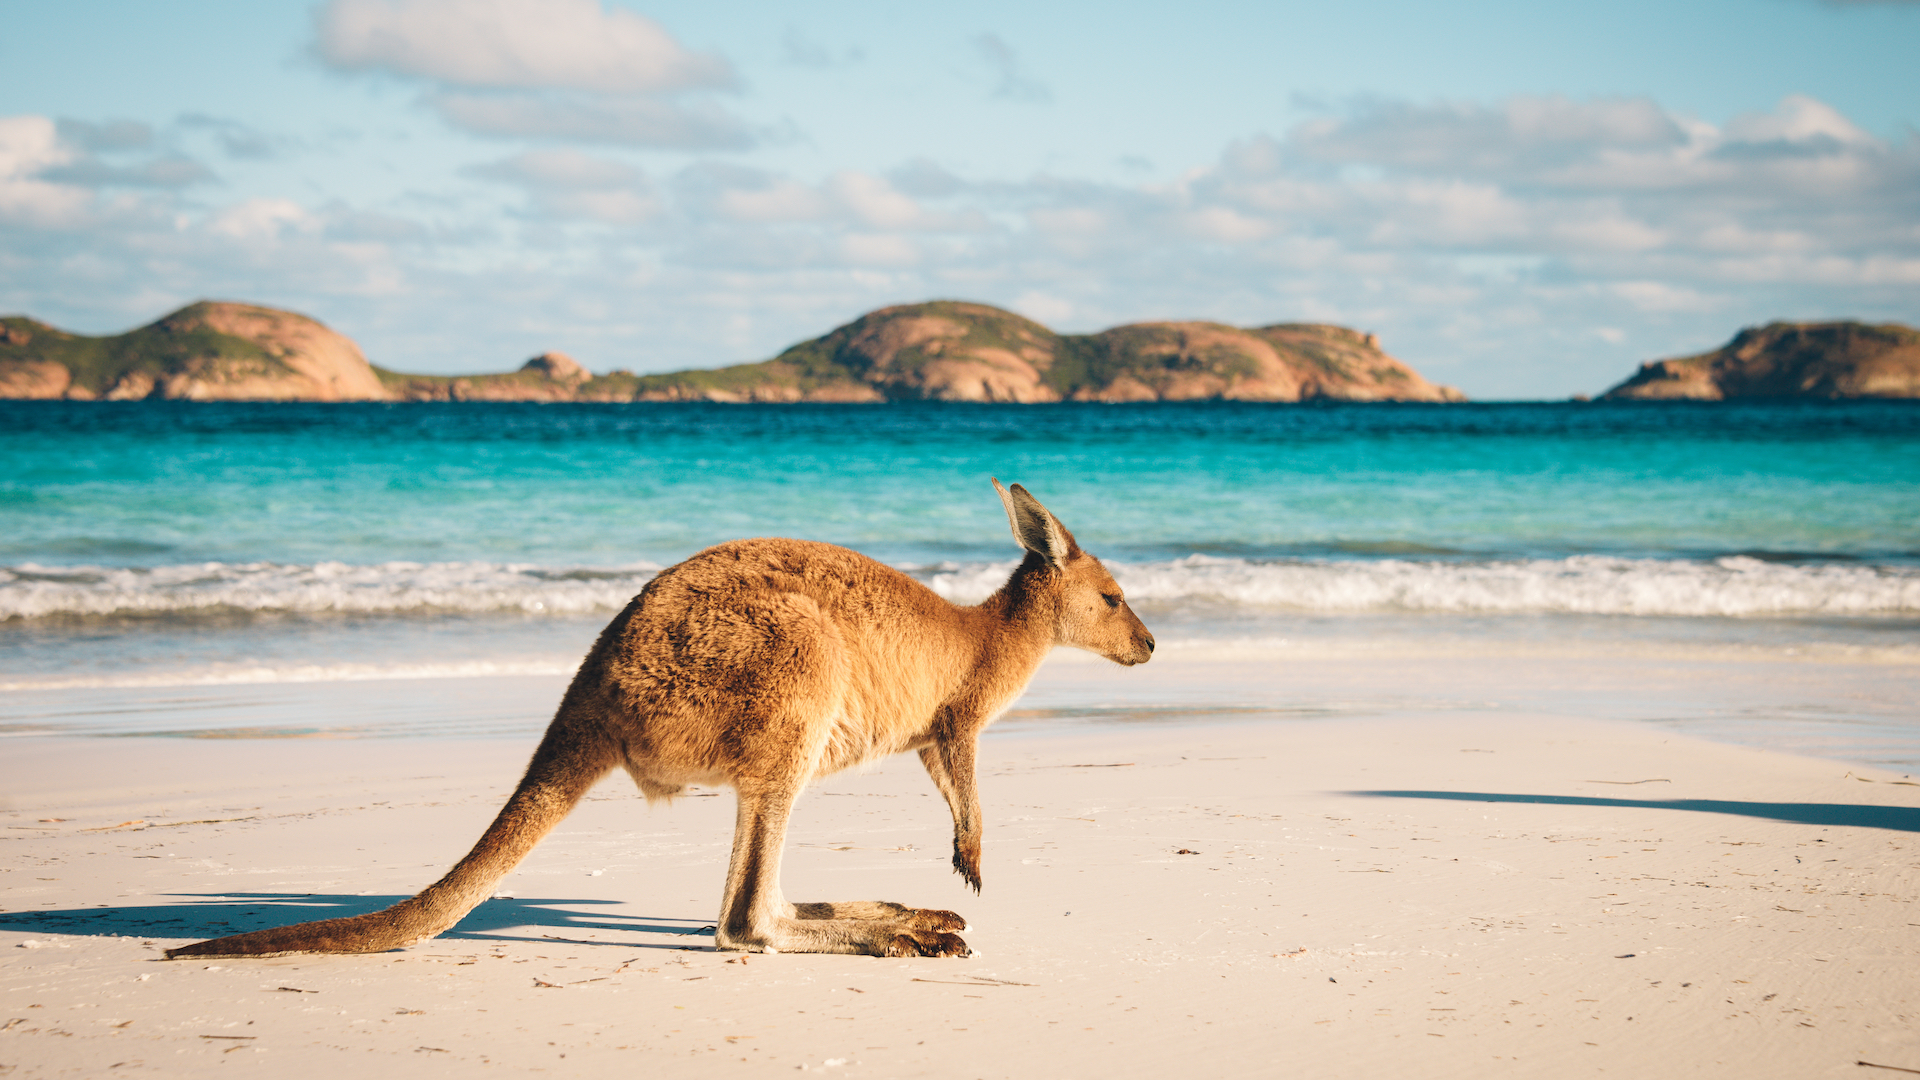 Kangaroo On Litter Free Beach